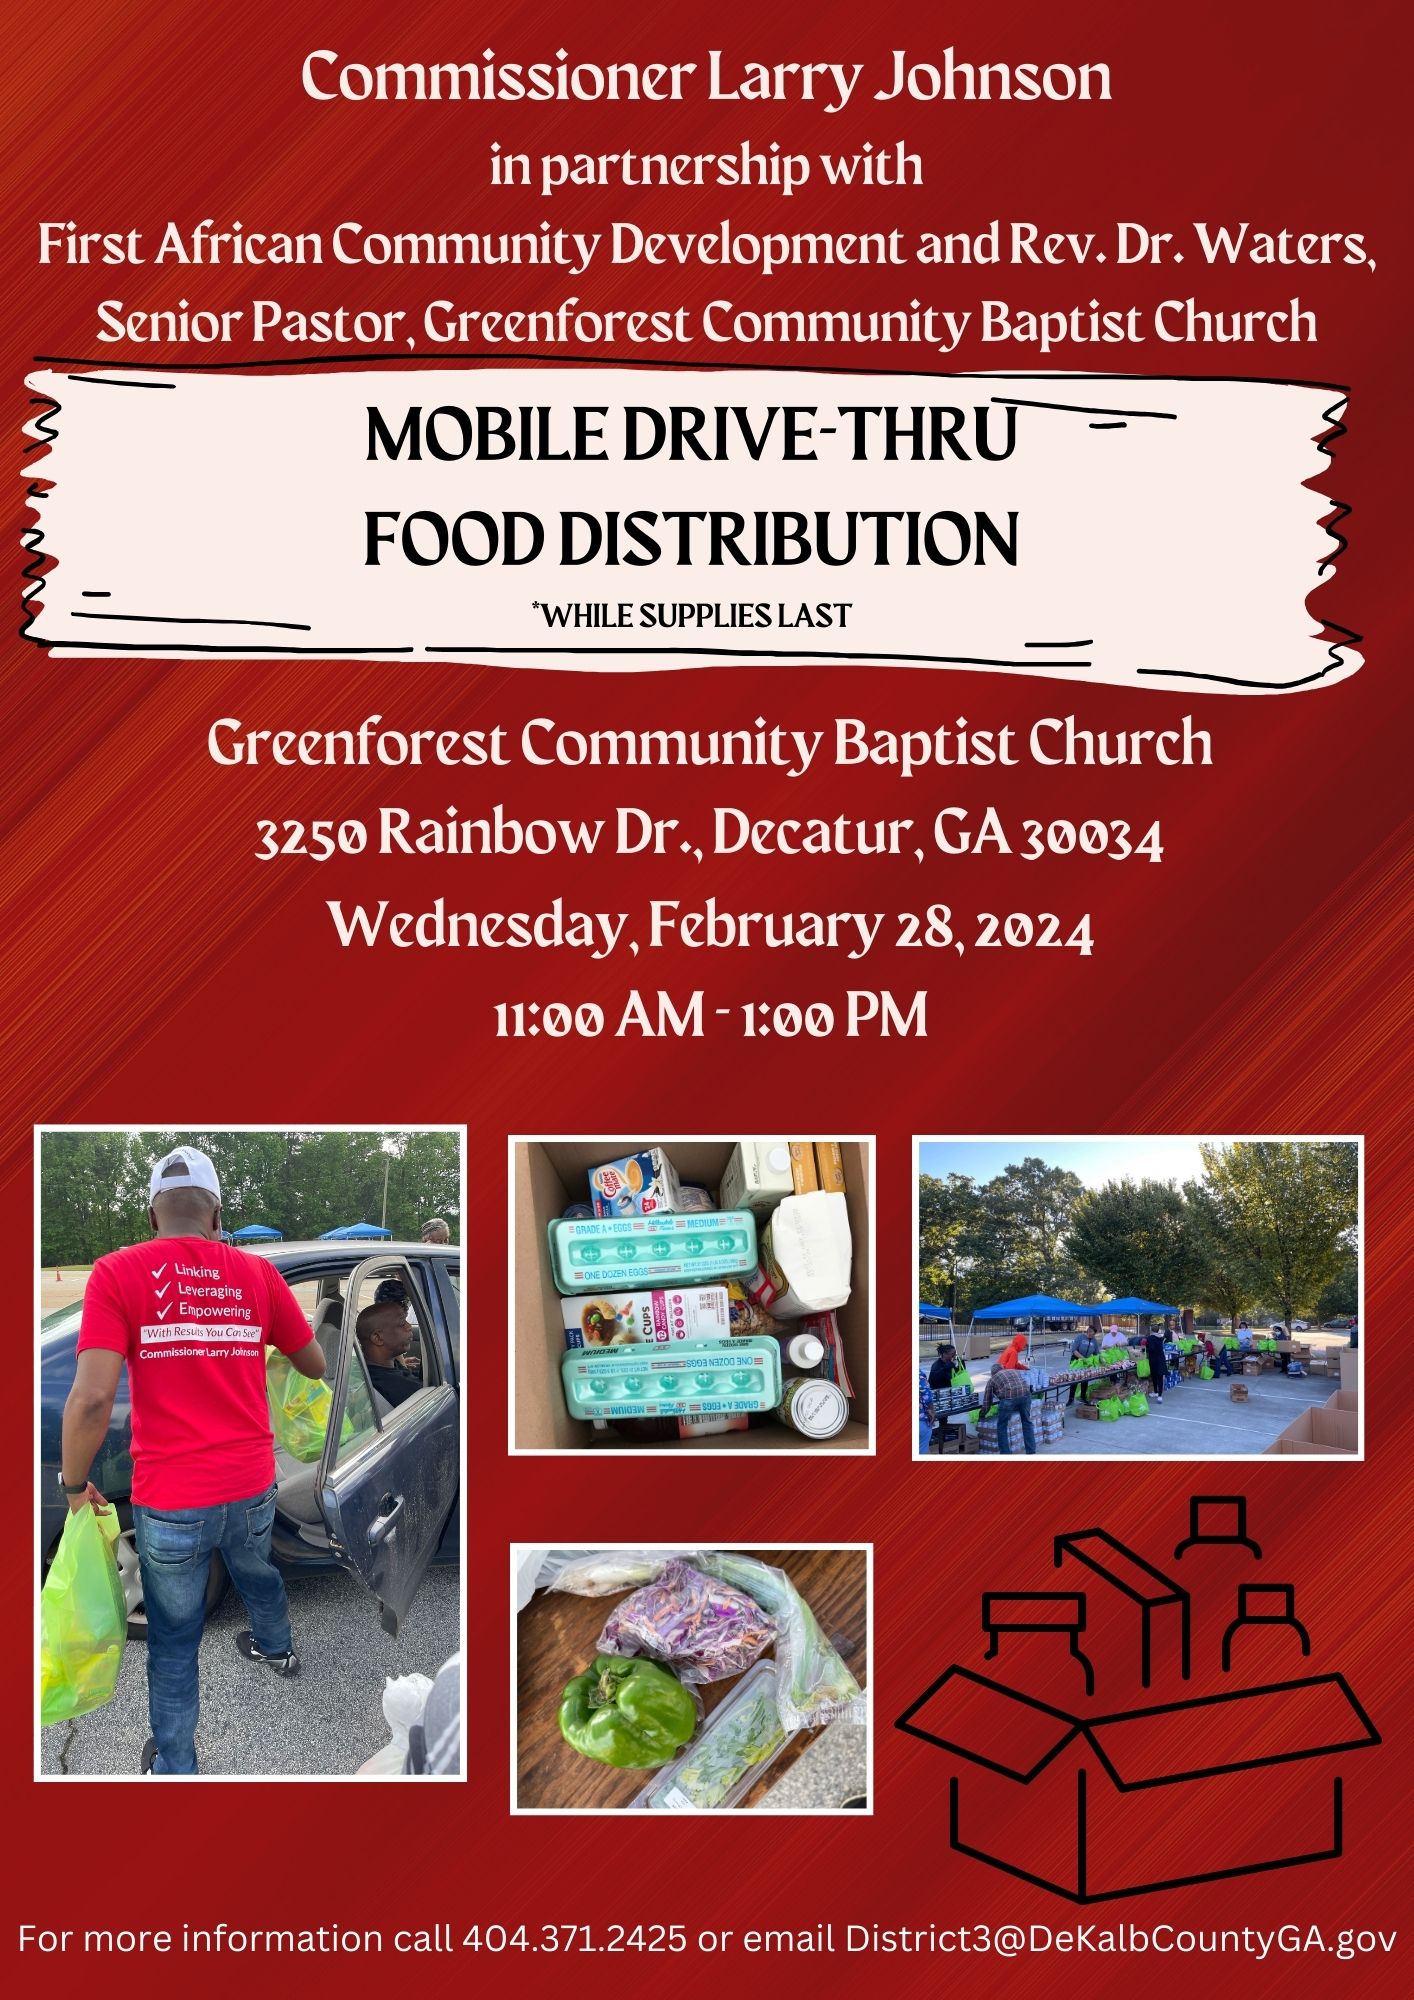 Mobile Drive-Thru Food Distribution